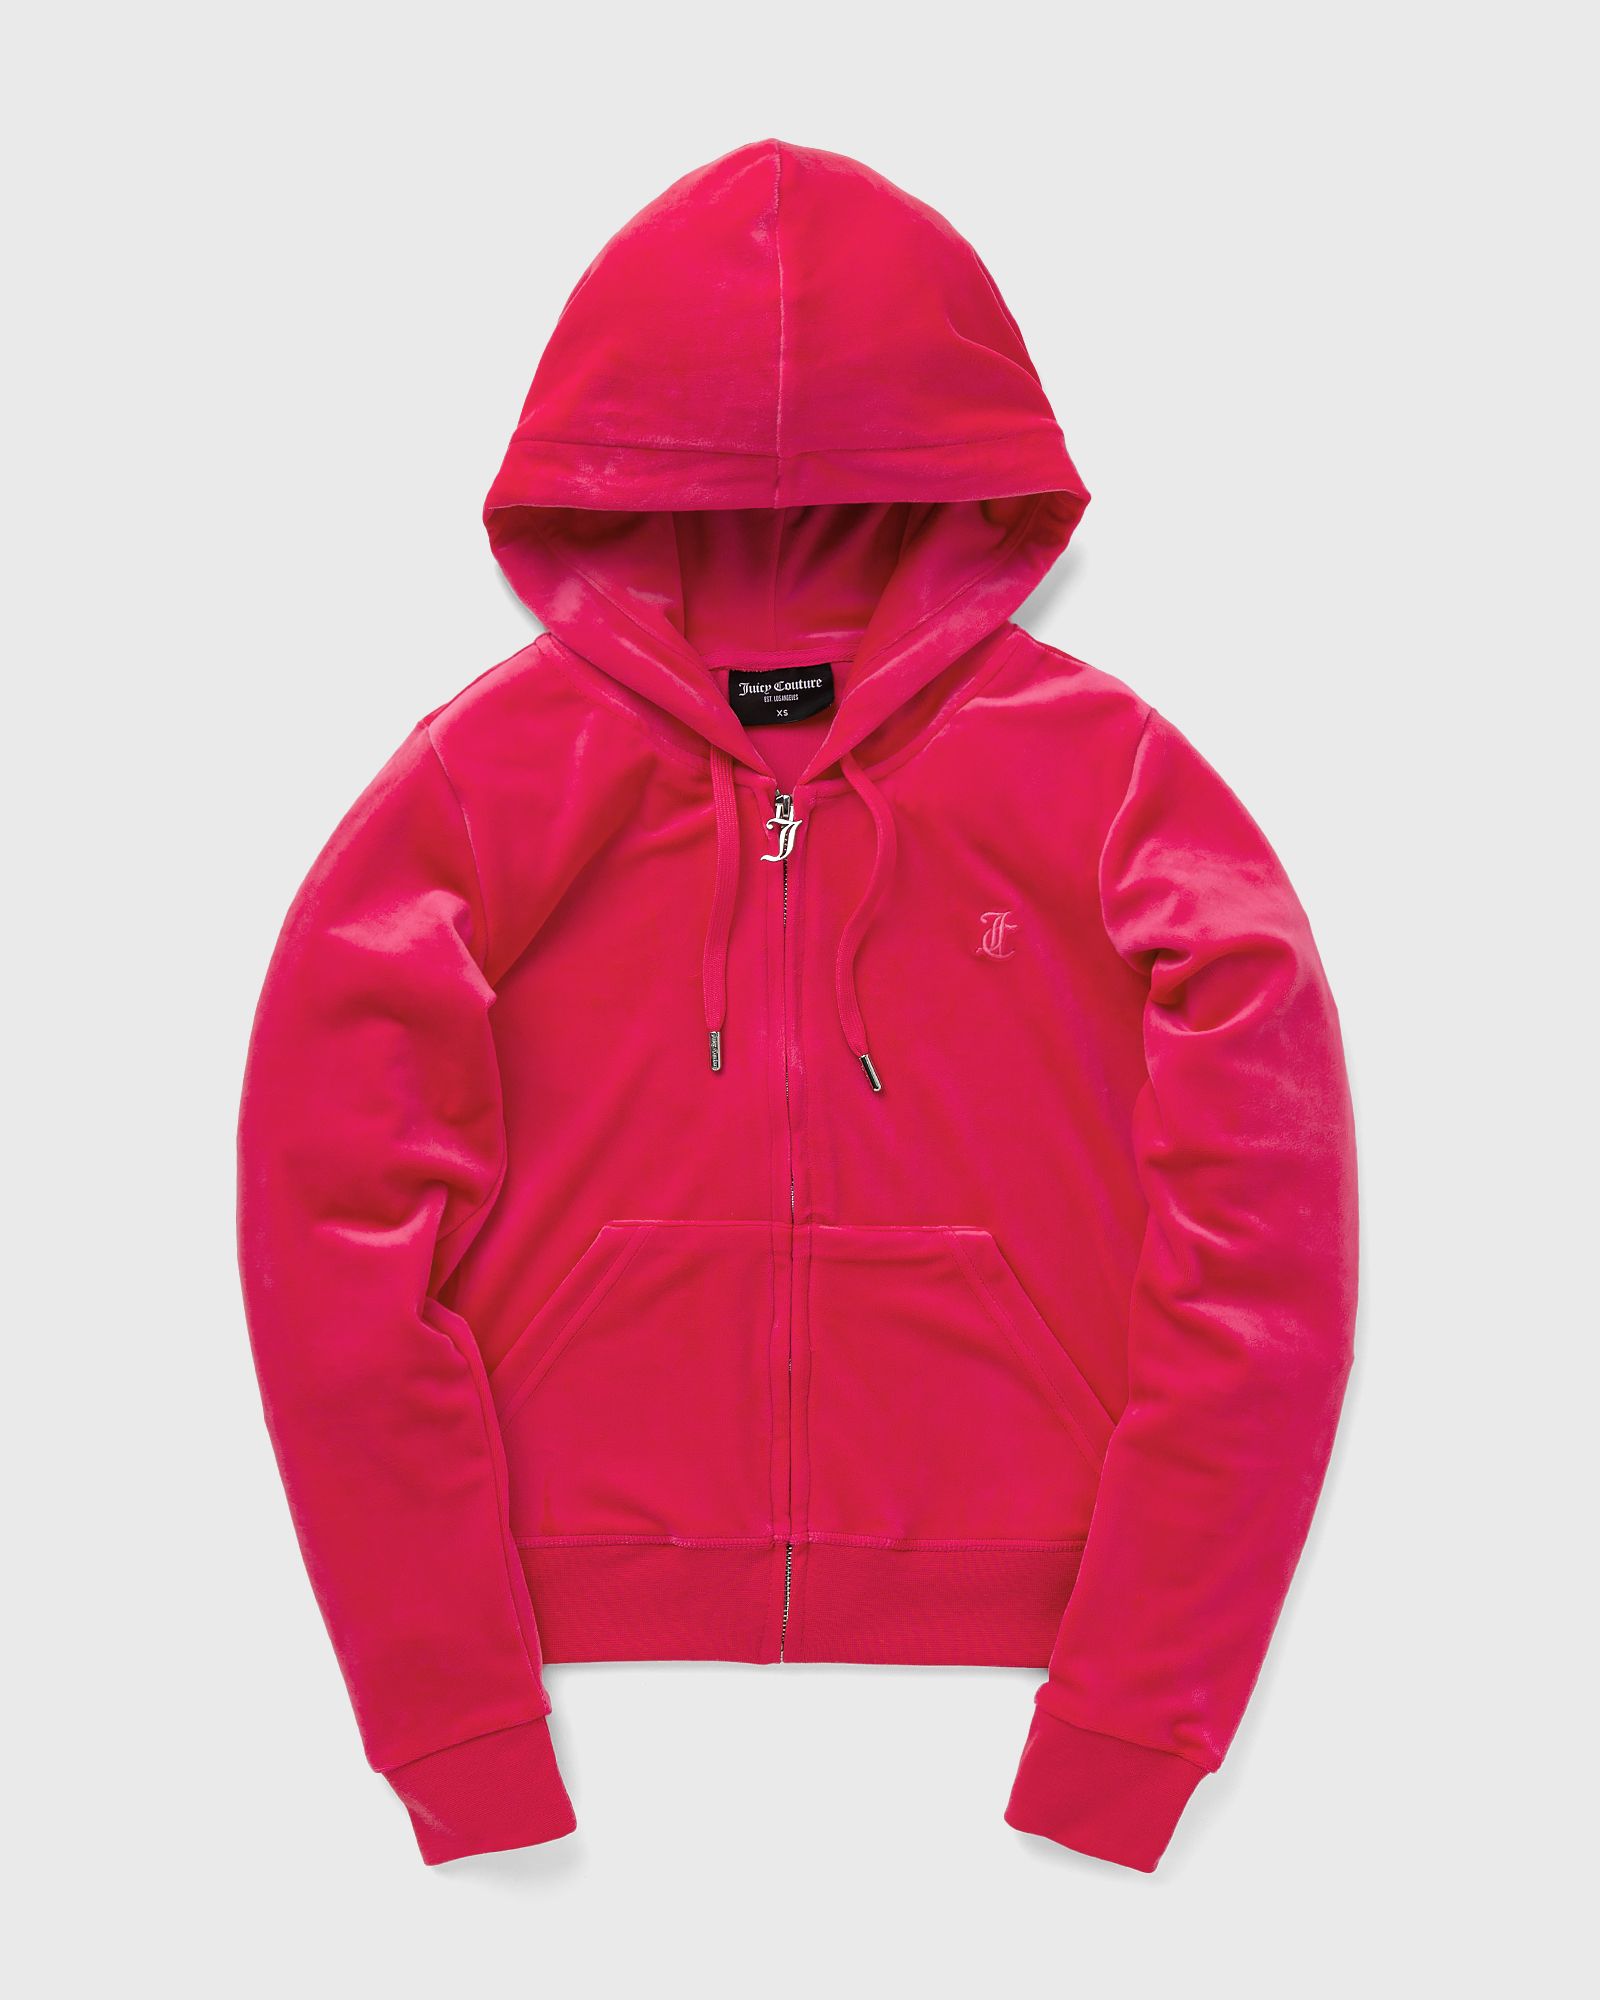 Juicy Couture - classic velour robertson zip hoodie women zippers pink in größe:m